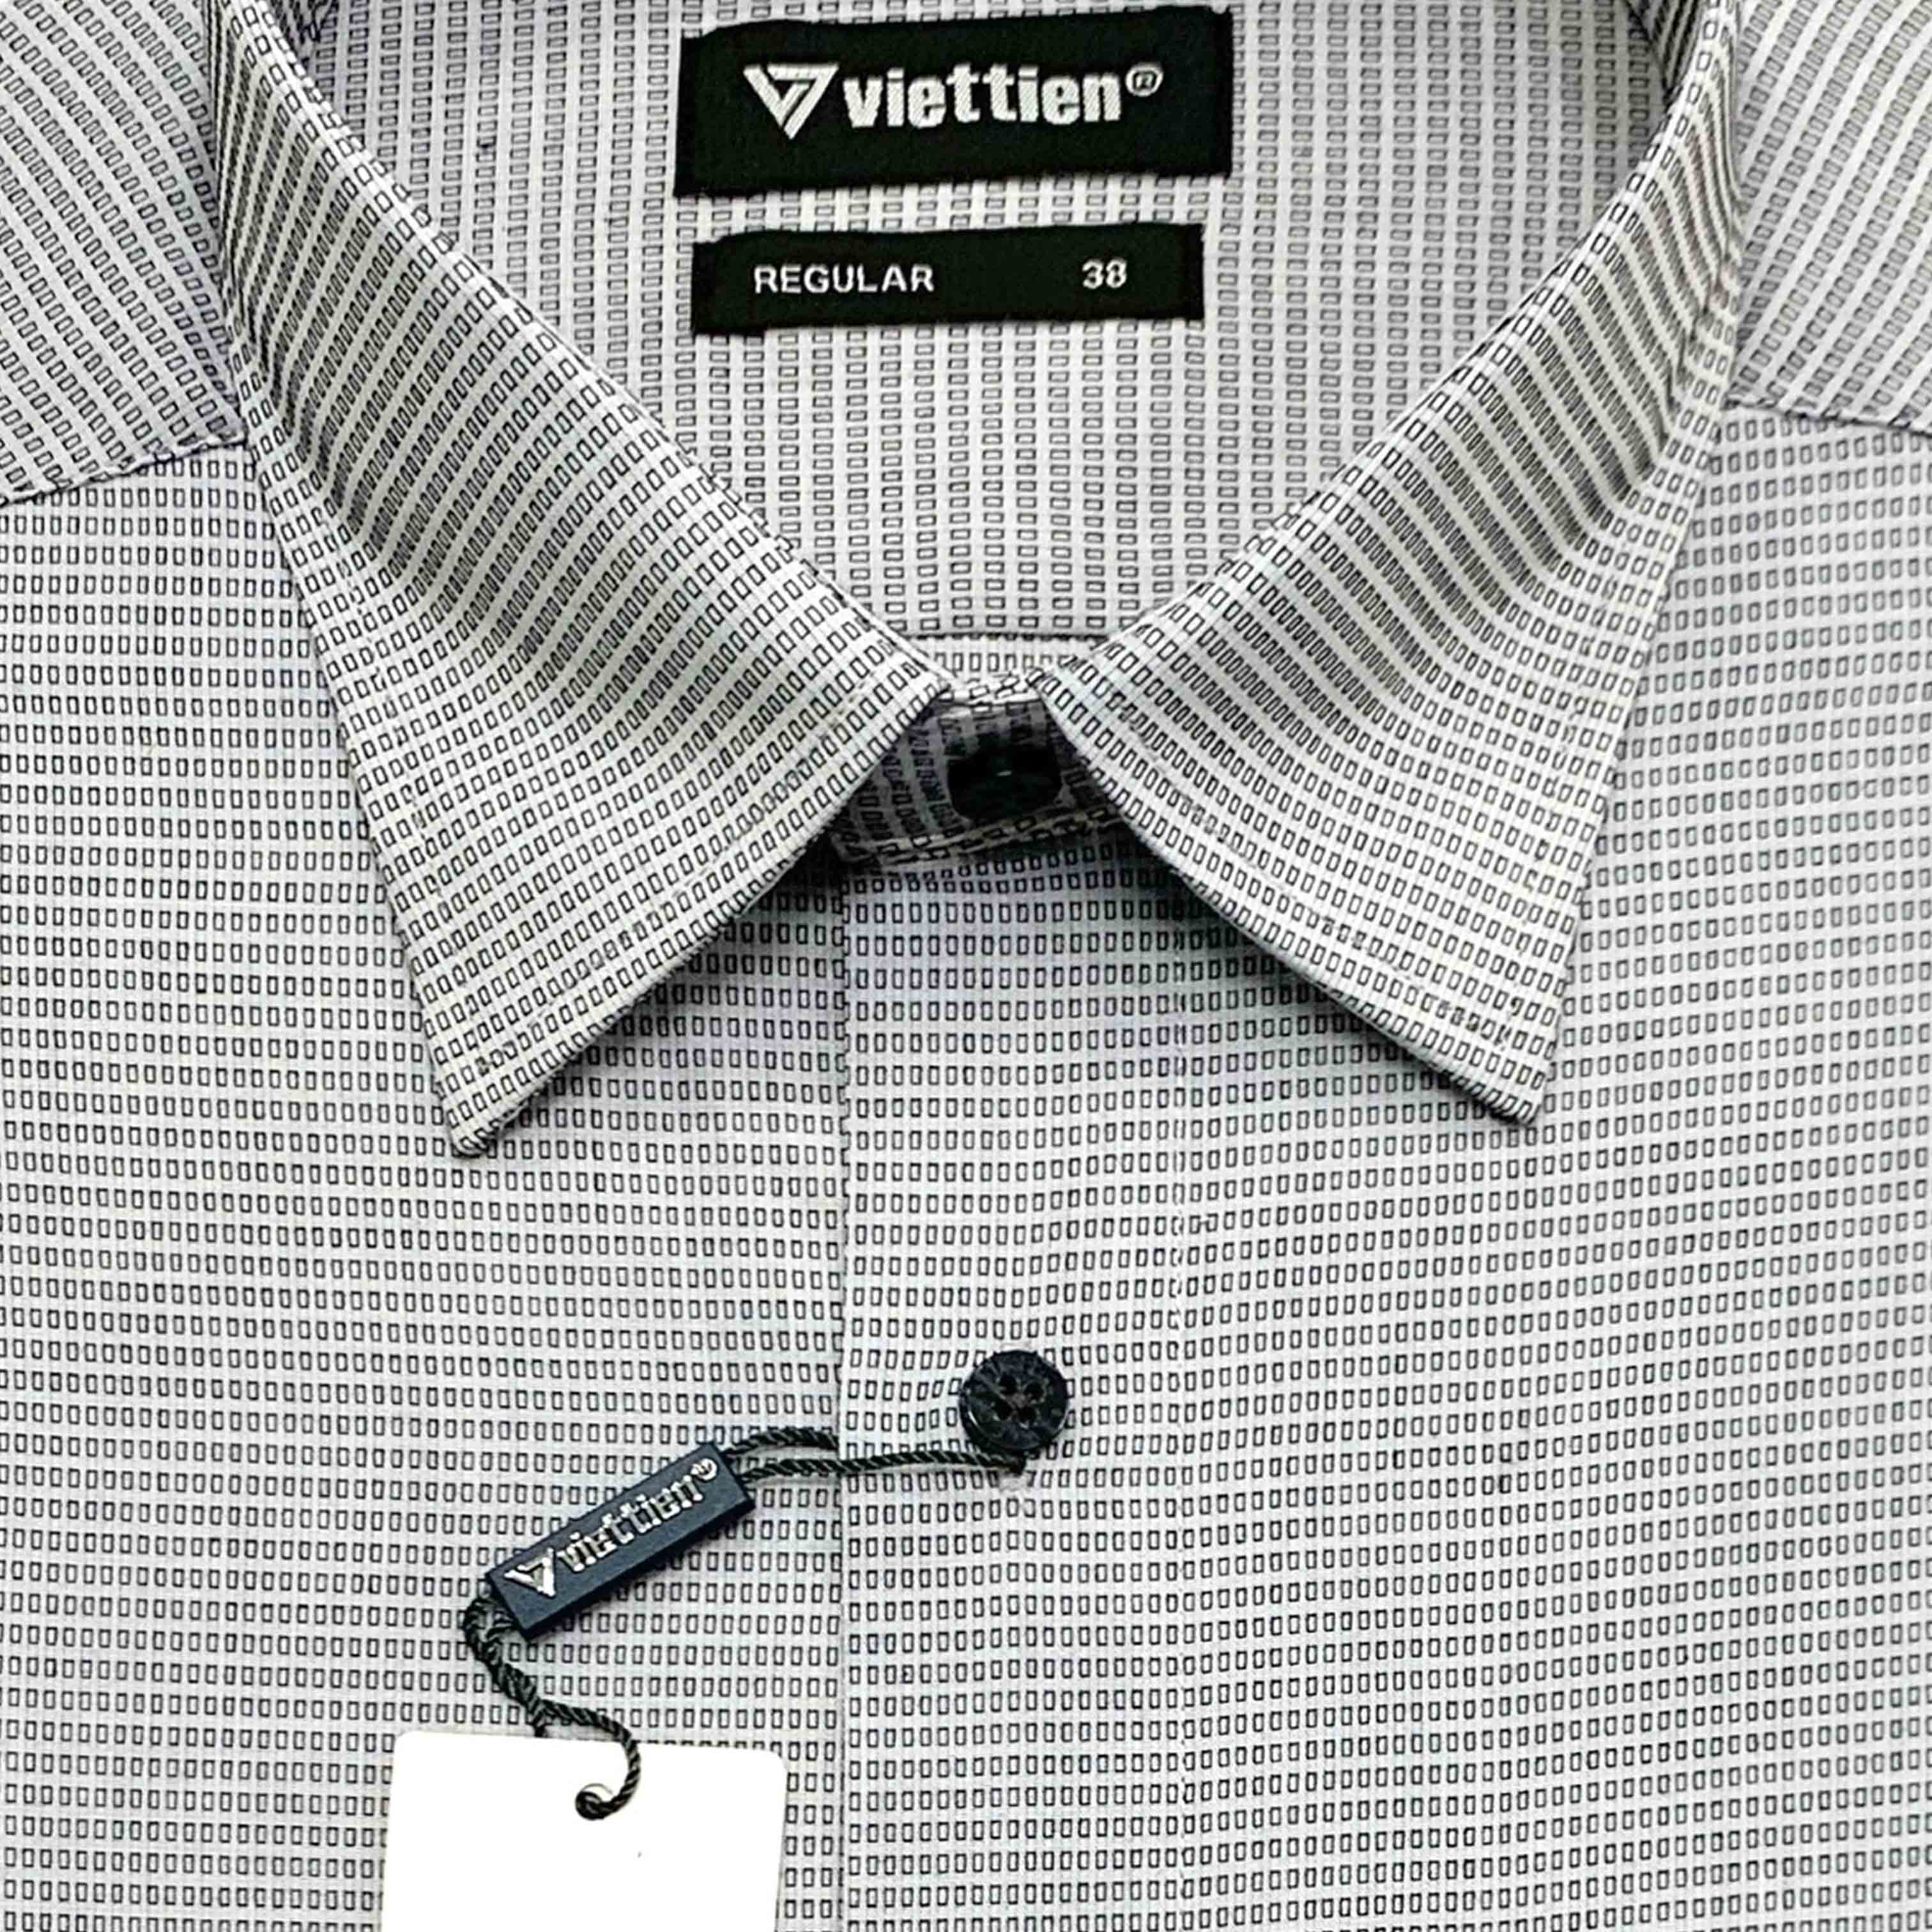 Viettien - Áo sơ mi nam ngắn tay họa tiết vạt bầu 1N1868 regular